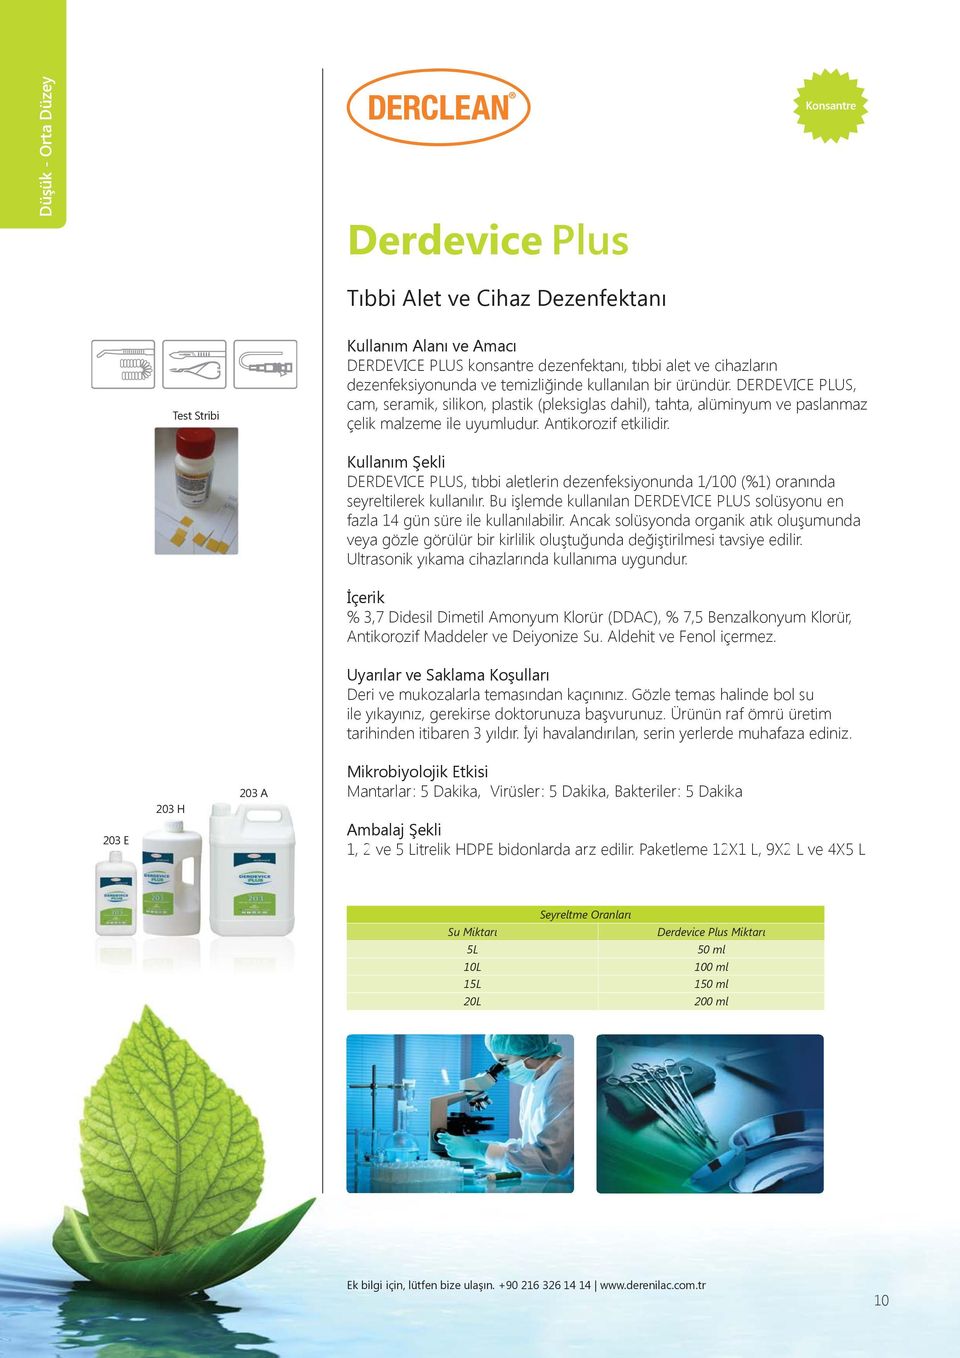 DERDEVICE PLUS, tıbbi aletlerin dezenfeksiyonunda 1/100 (%1) oranında seyreltilerek kullanılır. Bu işlemde kullanılan DERDEVICE PLUS solüsyonu en fazla 14 gün süre ile kullanılabilir.